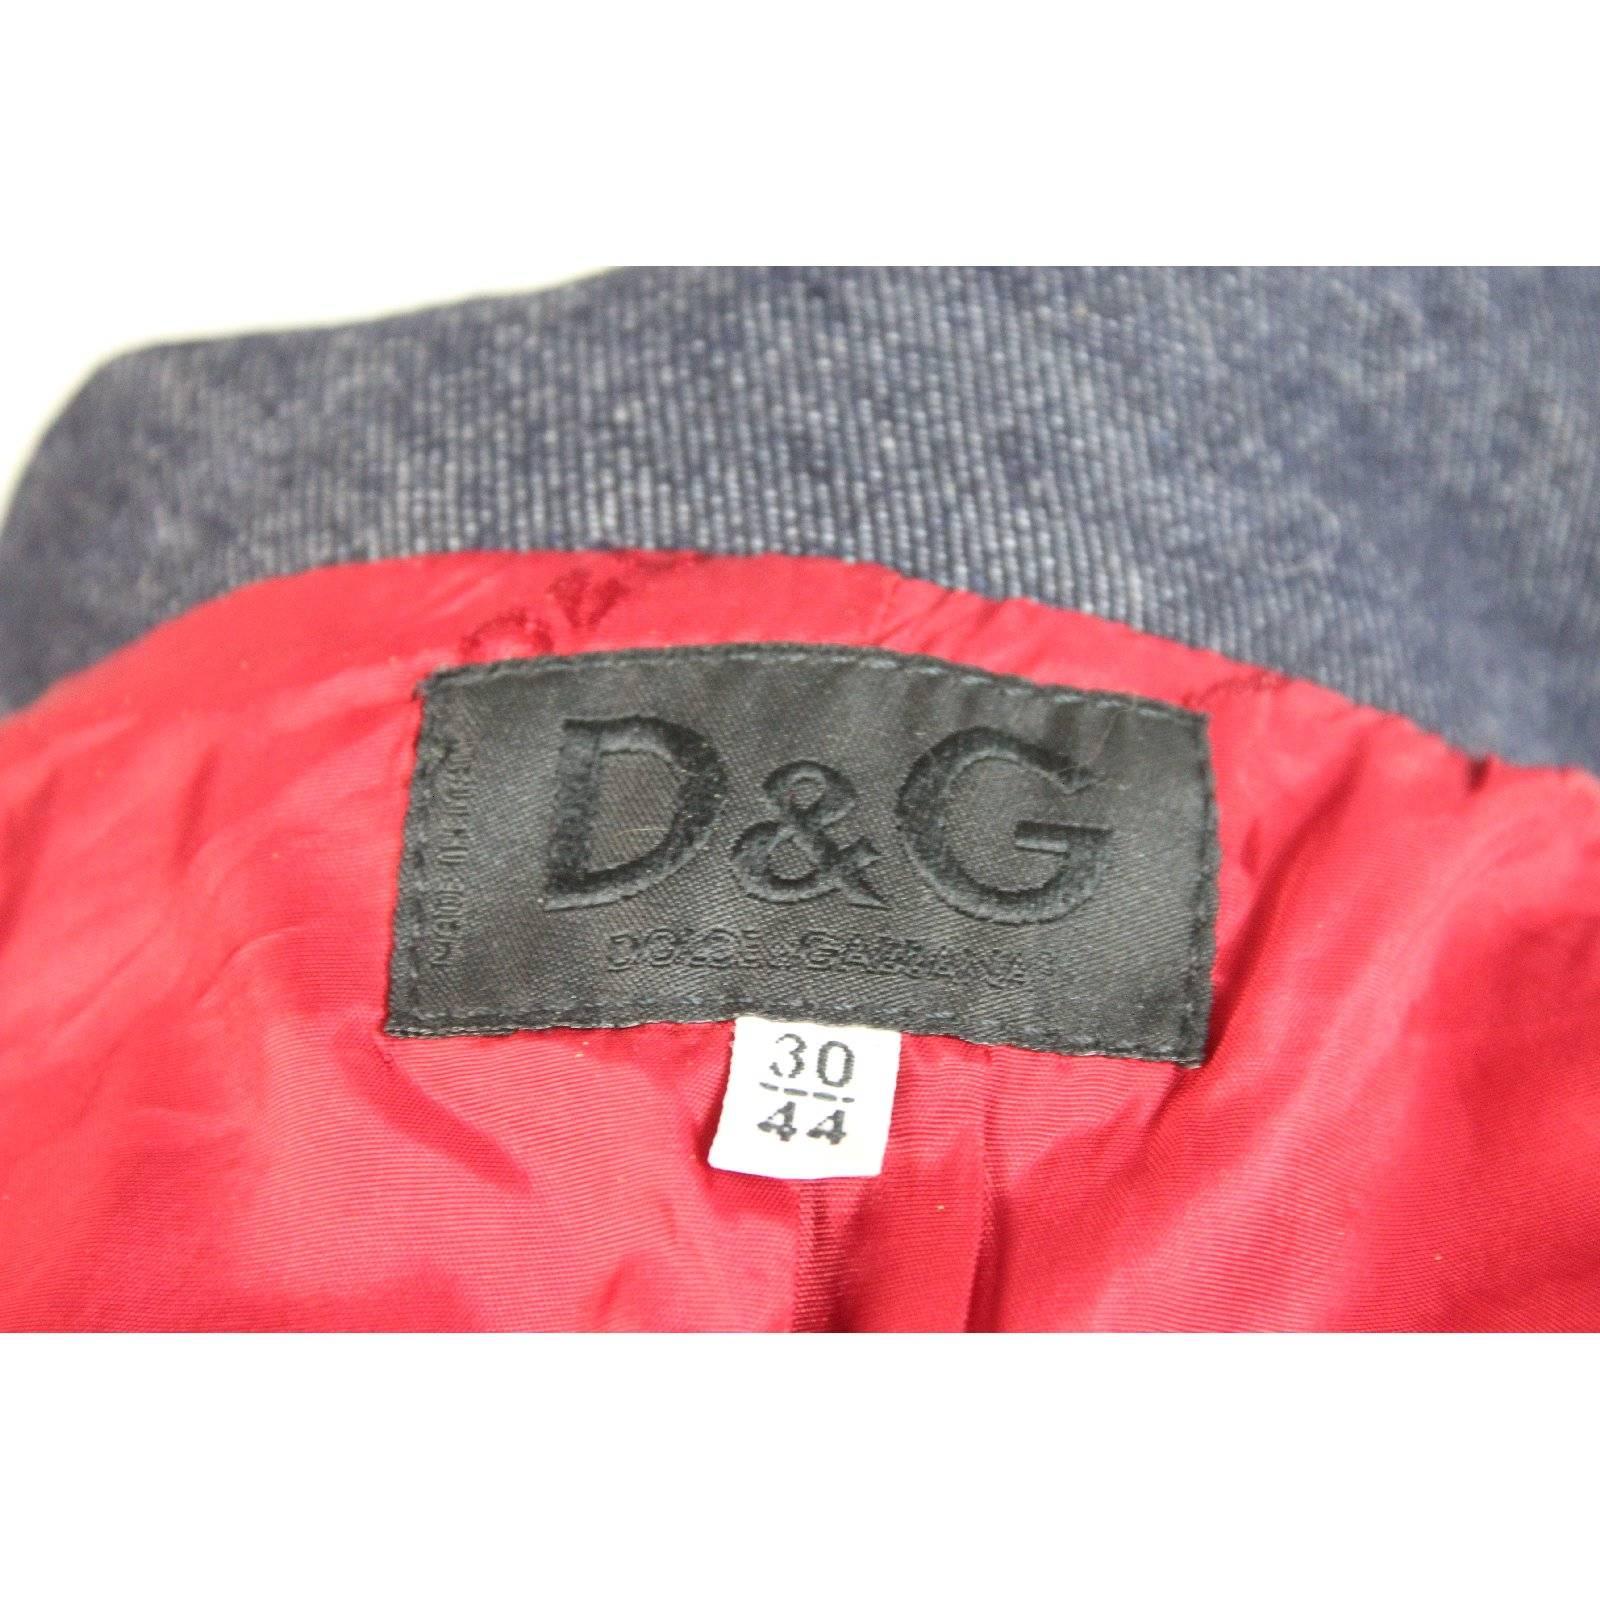 Dolce e Gabbana wool cotton red fur jeans jacket bolero women’s 1980s size 44 it 1